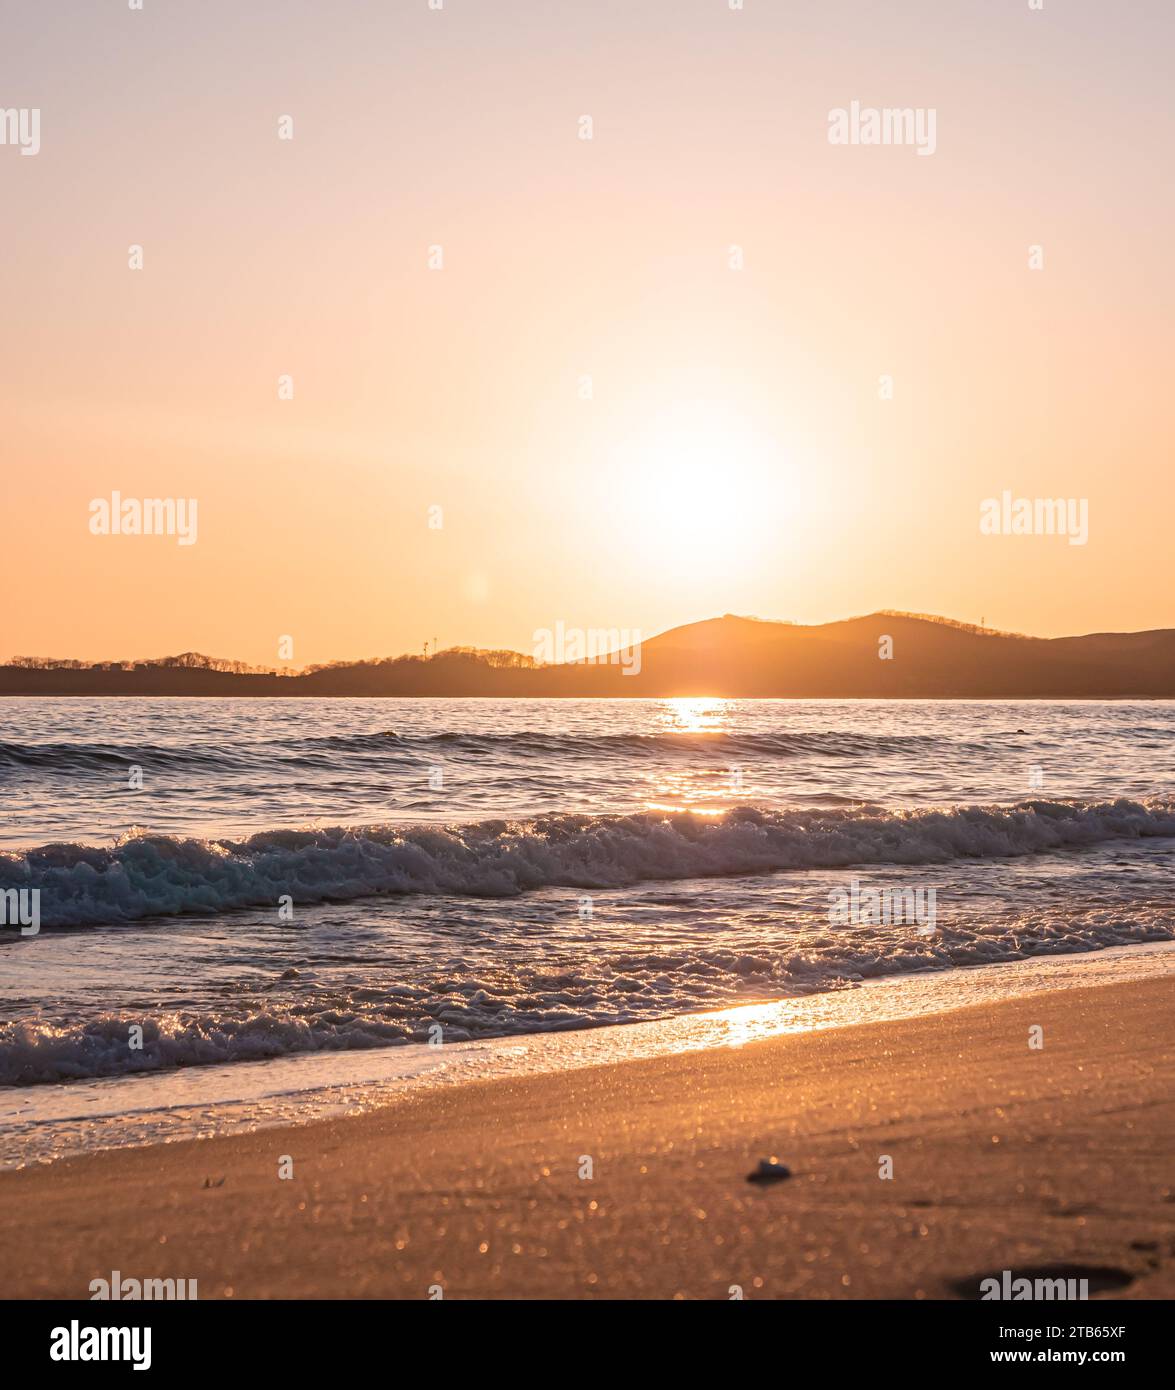 Puesta de sol en la playa. Naranja y dorado atardecer cielo calma tranquila luz solar relajante verano estado de ánimo. Foto de stock